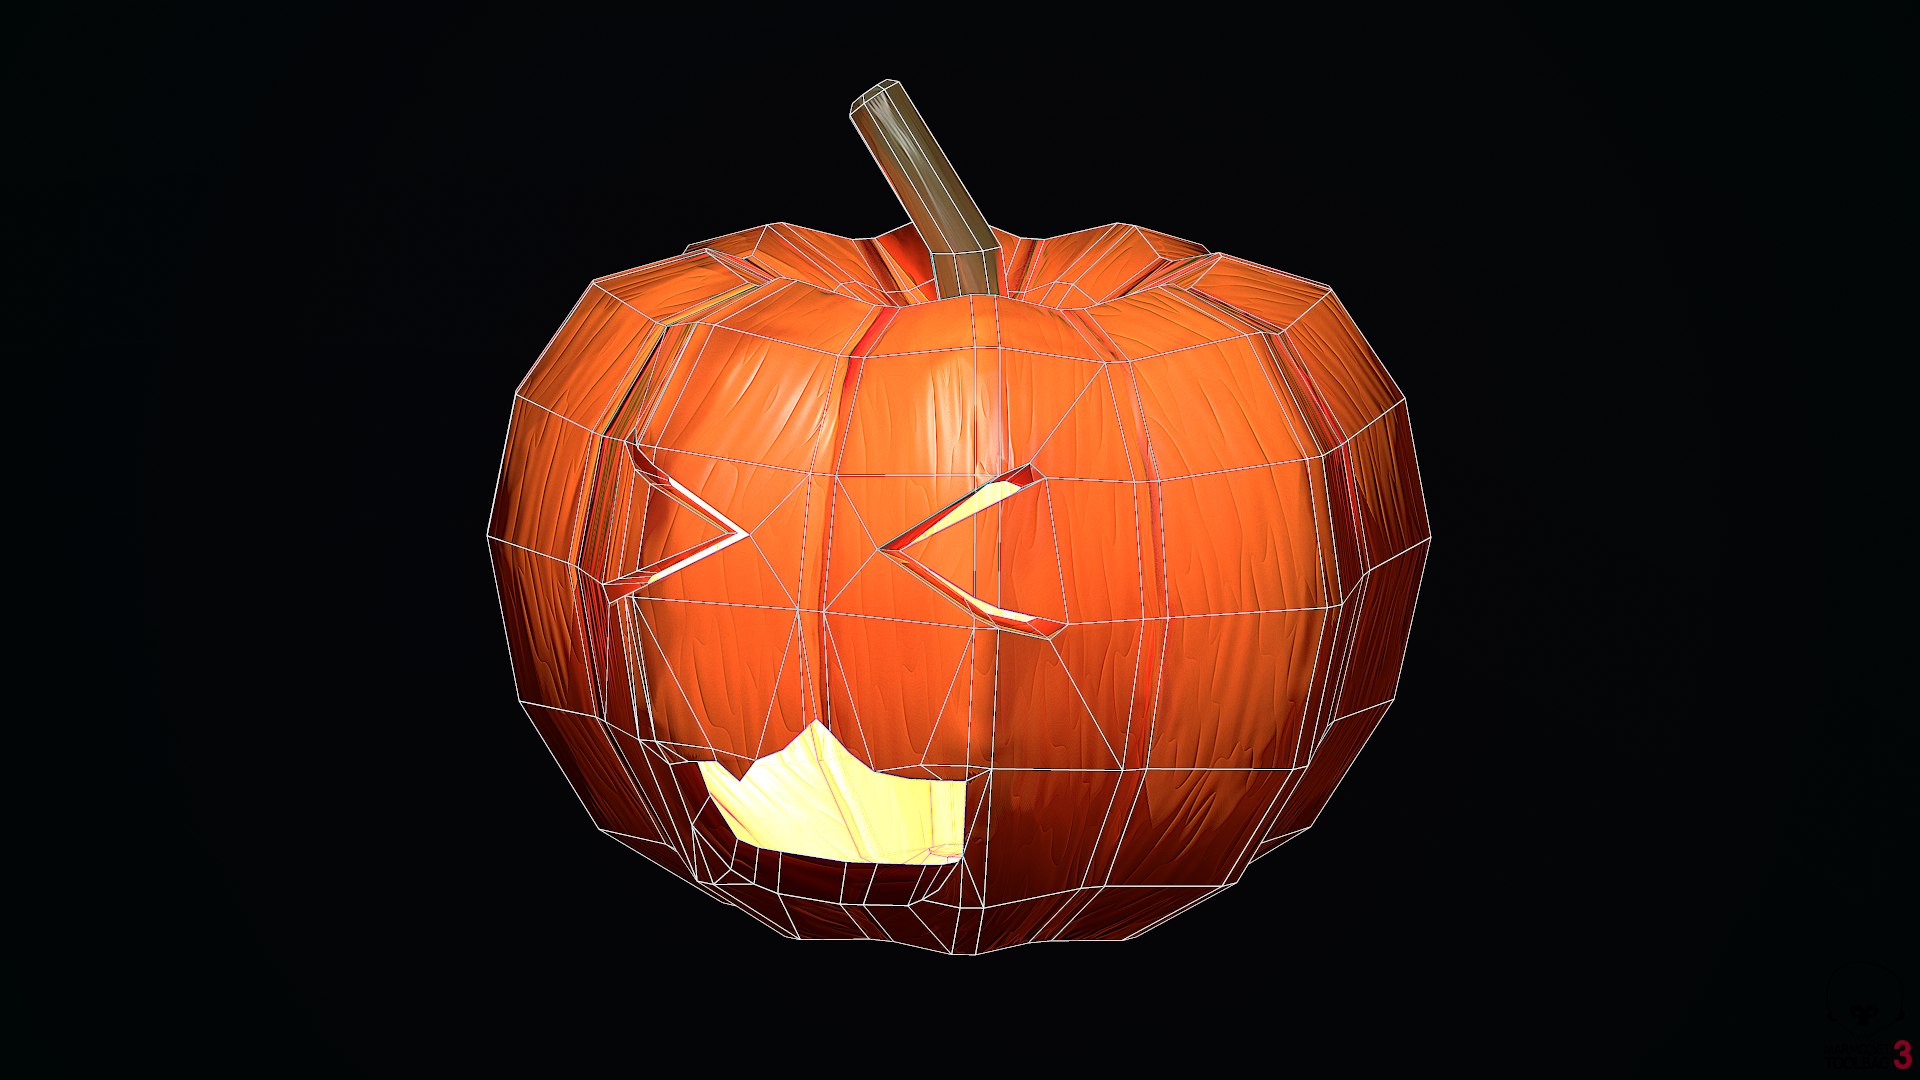 Tokyo Ghoul Pumpkin | Halloween pumpkin carving stencils, Halloween pumpkin  designs, Pumpkin carvings stencils